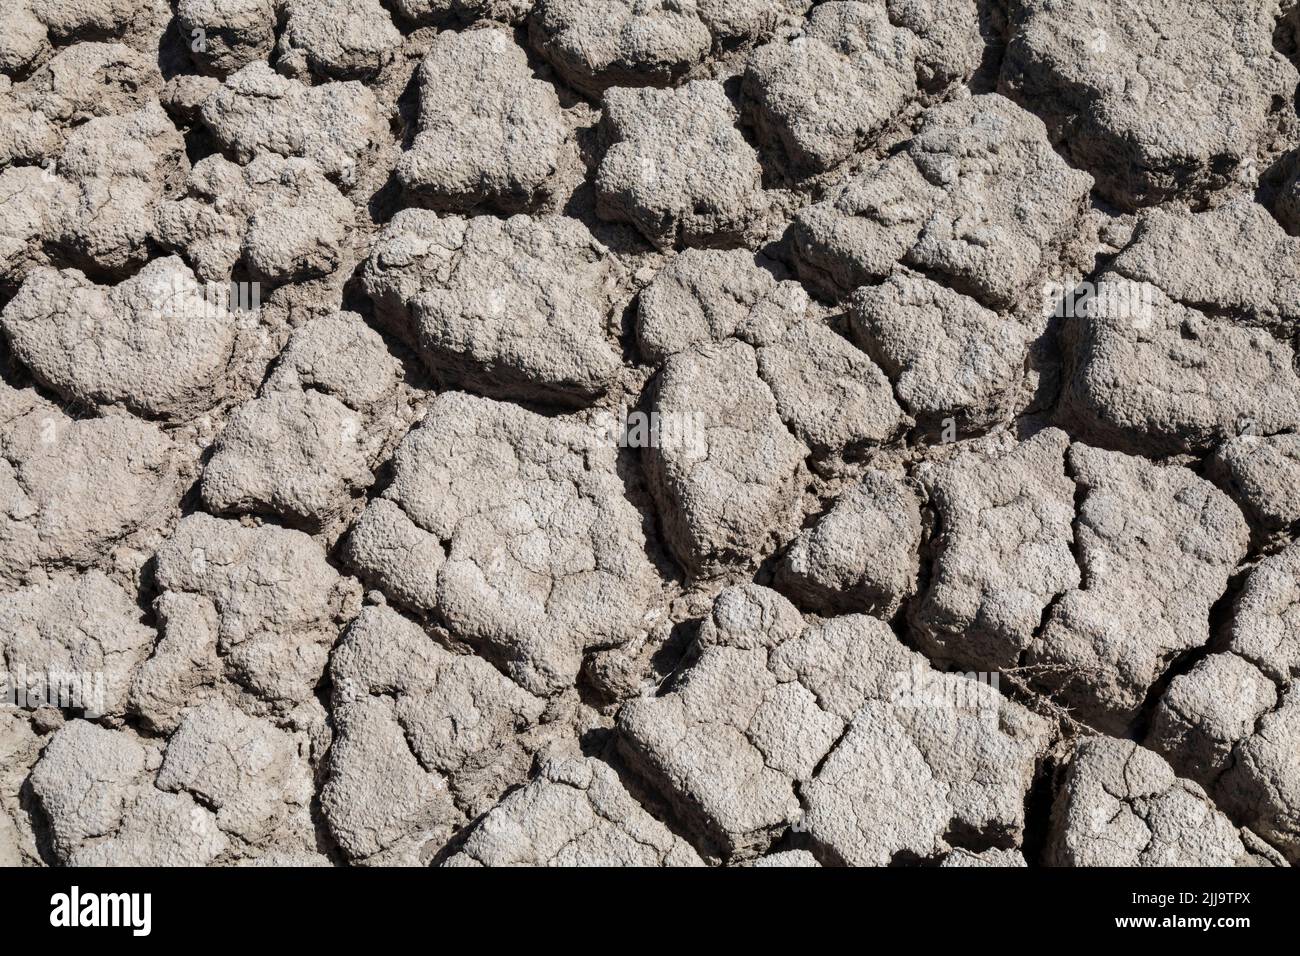 Salt Lake City, Utah - il fango secco è tutto ciò che rimane nel porticciolo dell'Antelope Island state Park. Il livello dell'acqua del lago è sceso a un livello storico basso. Foto Stock